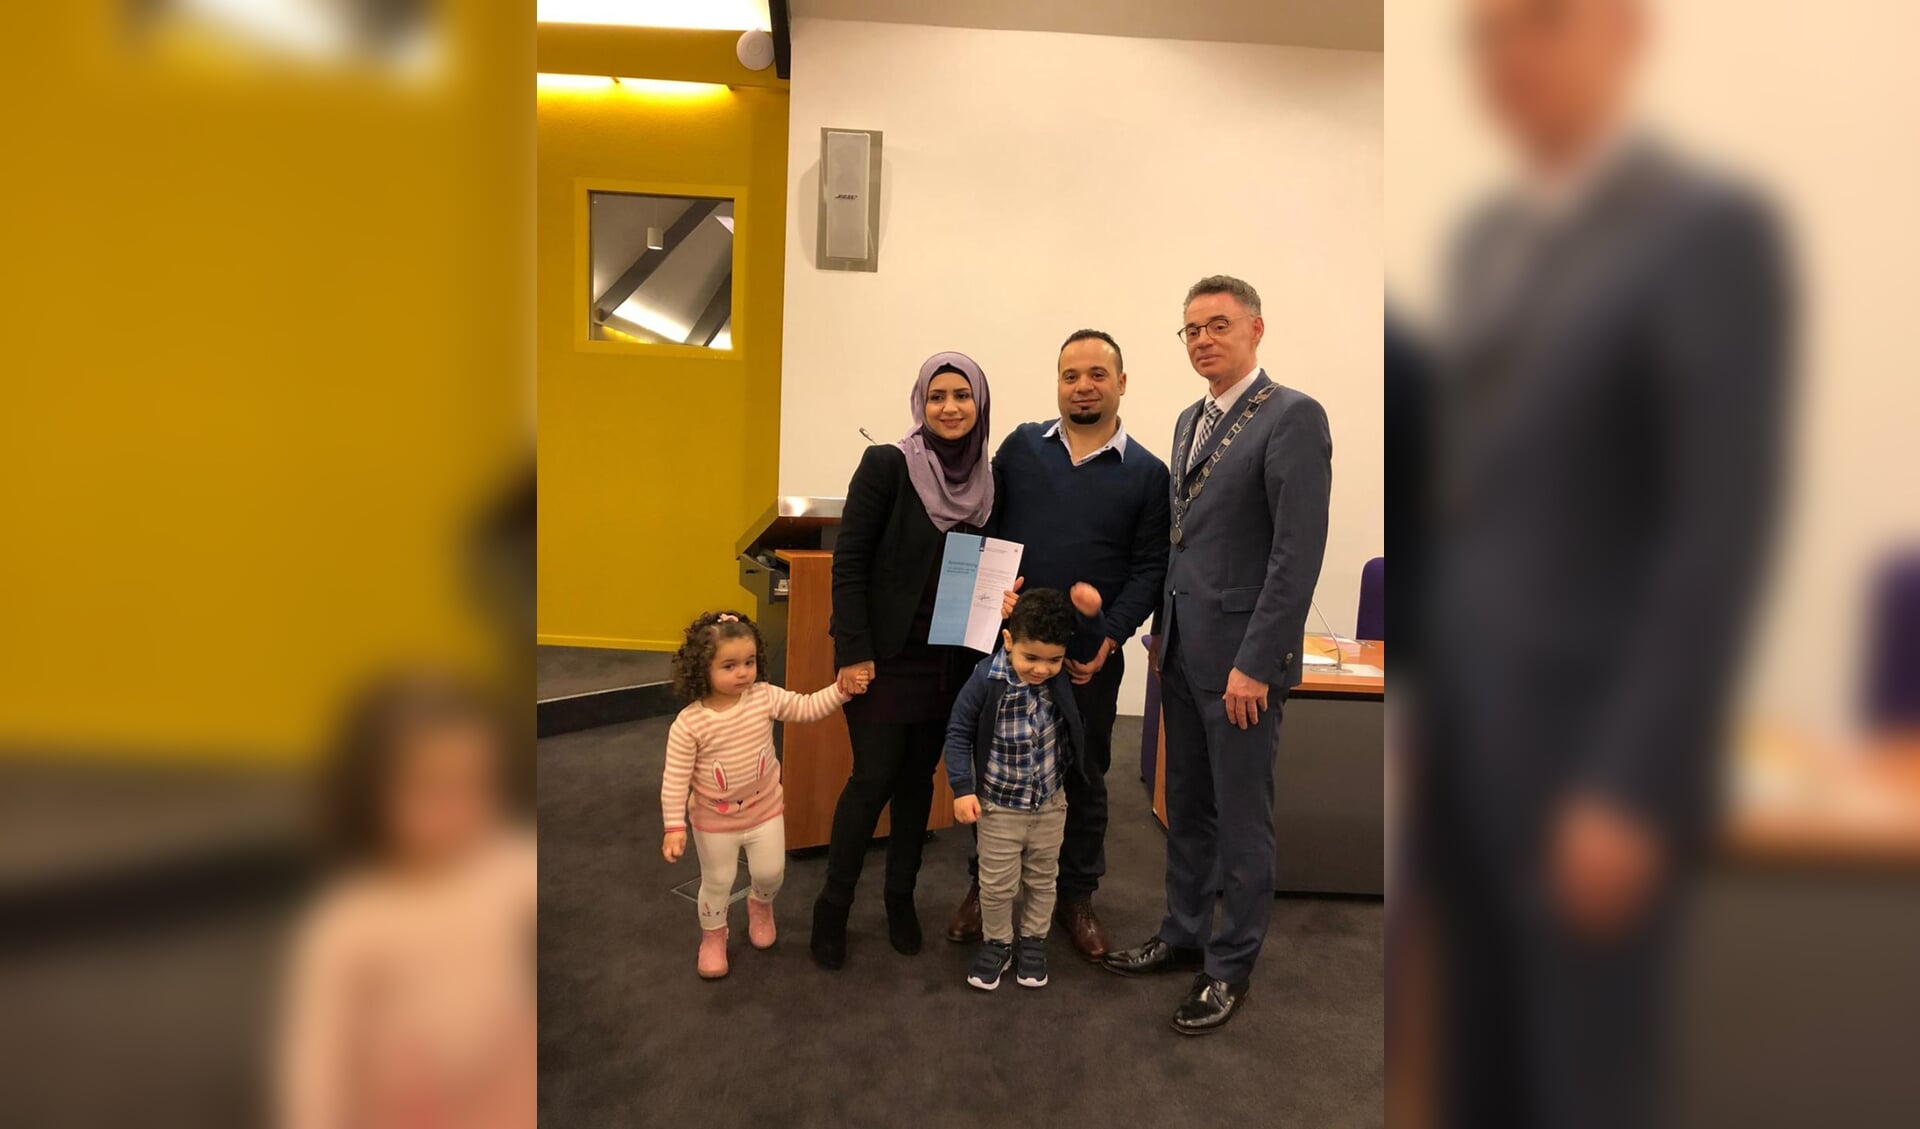 Mouhanned en zijn gezin samen met burgemeester Isabellla nadat zij de Nederlandse nationaliteit ontvingen